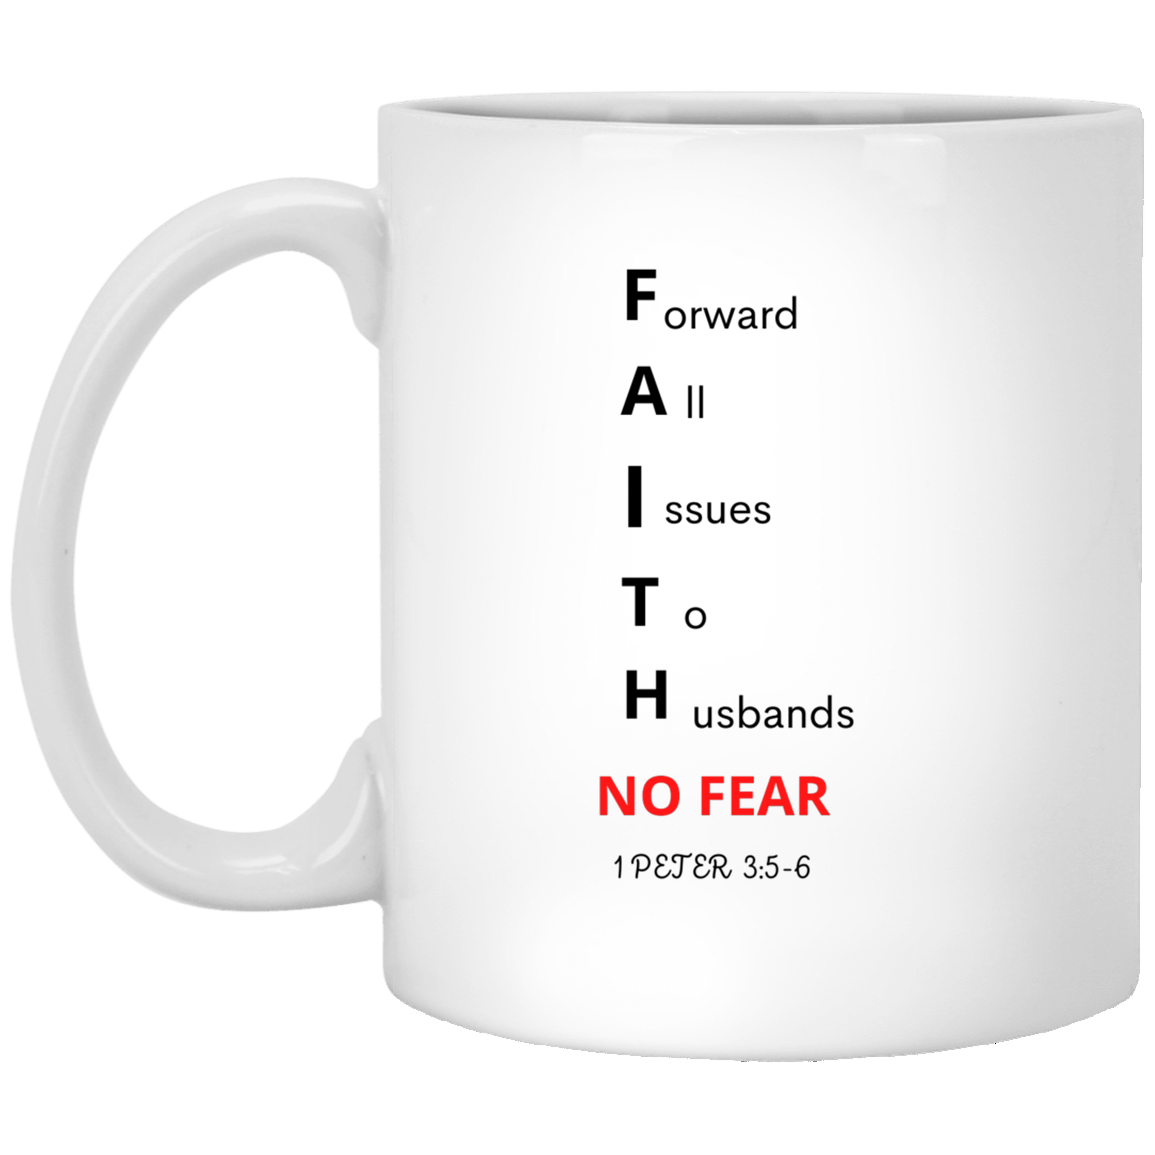 FAITH NO FEAR 11 oz. White Mug